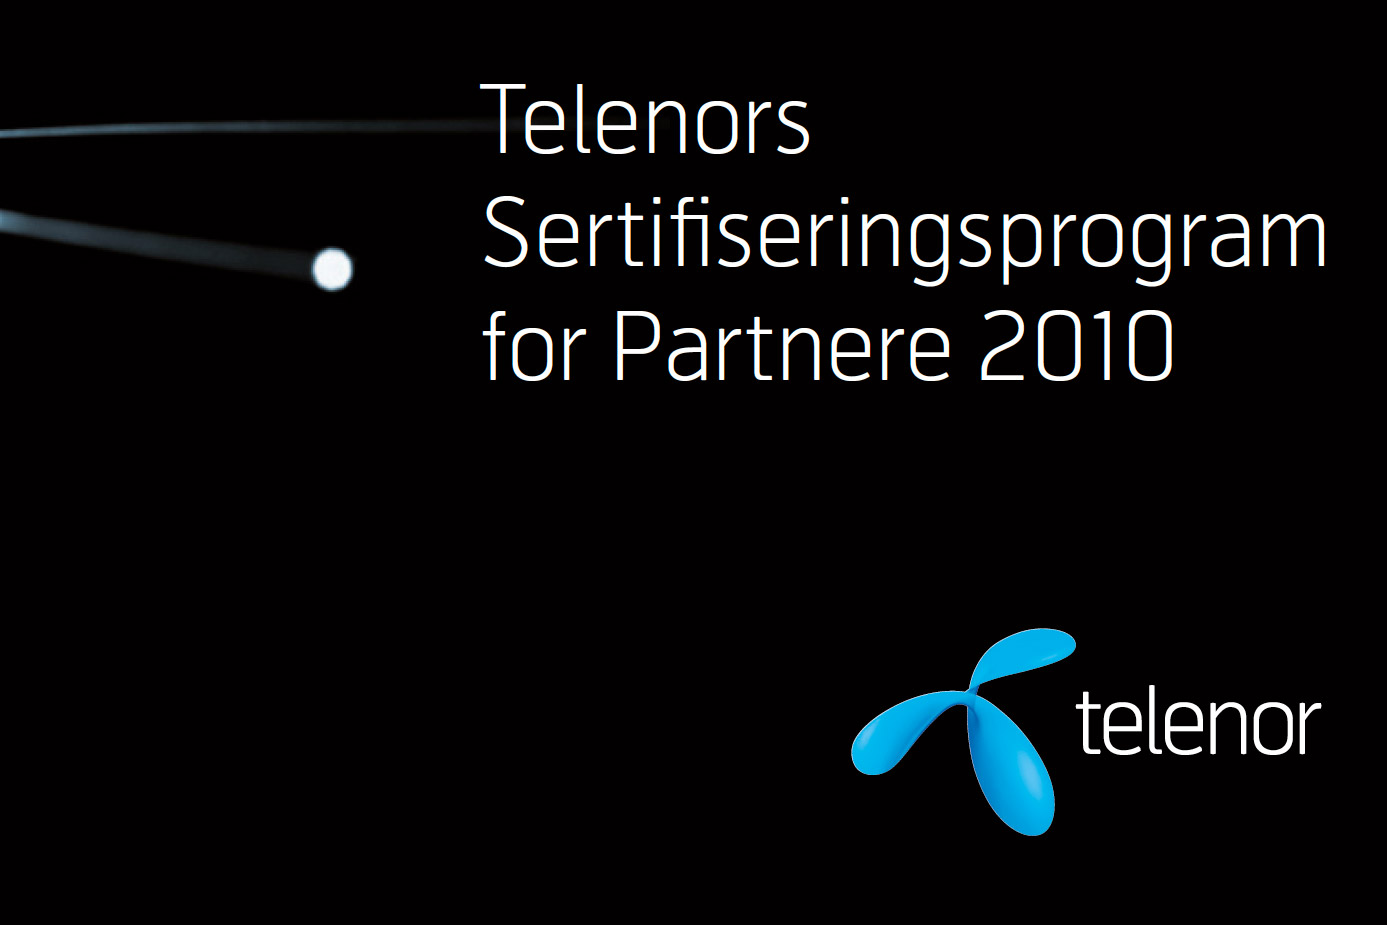 telenors-sertifiseringsprogram